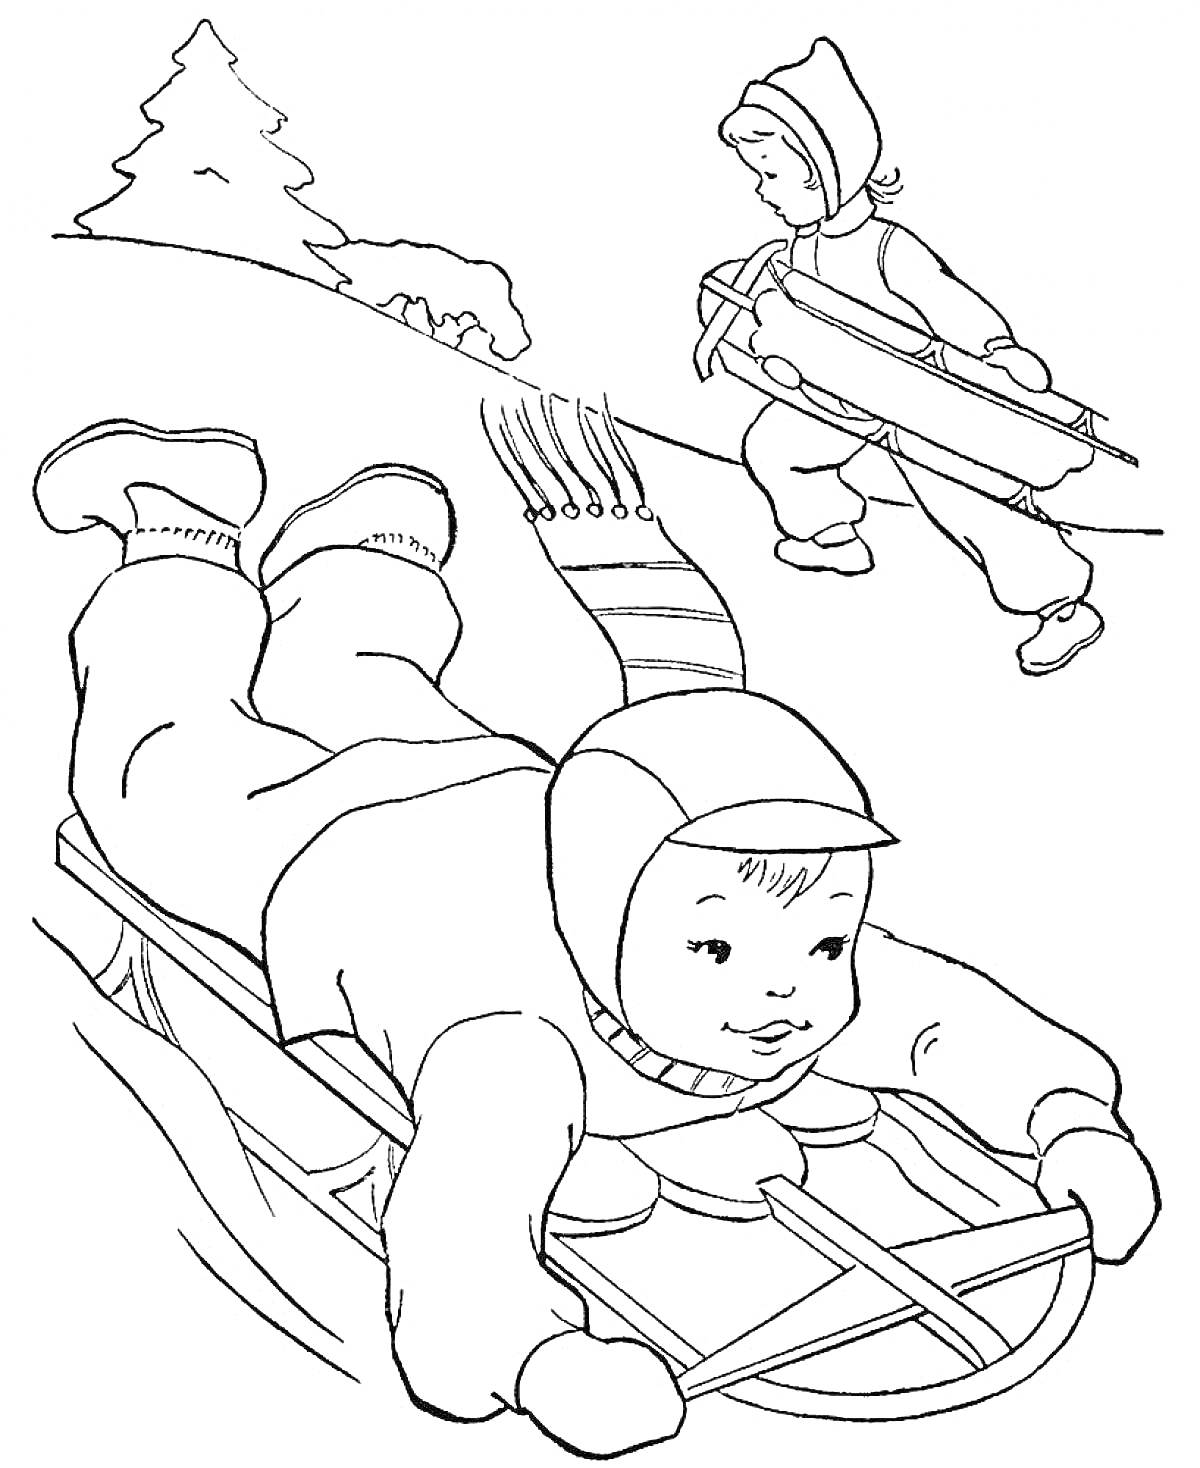 Дети на санях на снежном склоне, ребенок едет на санках лежа, второй несет санки, елка на заднем плане